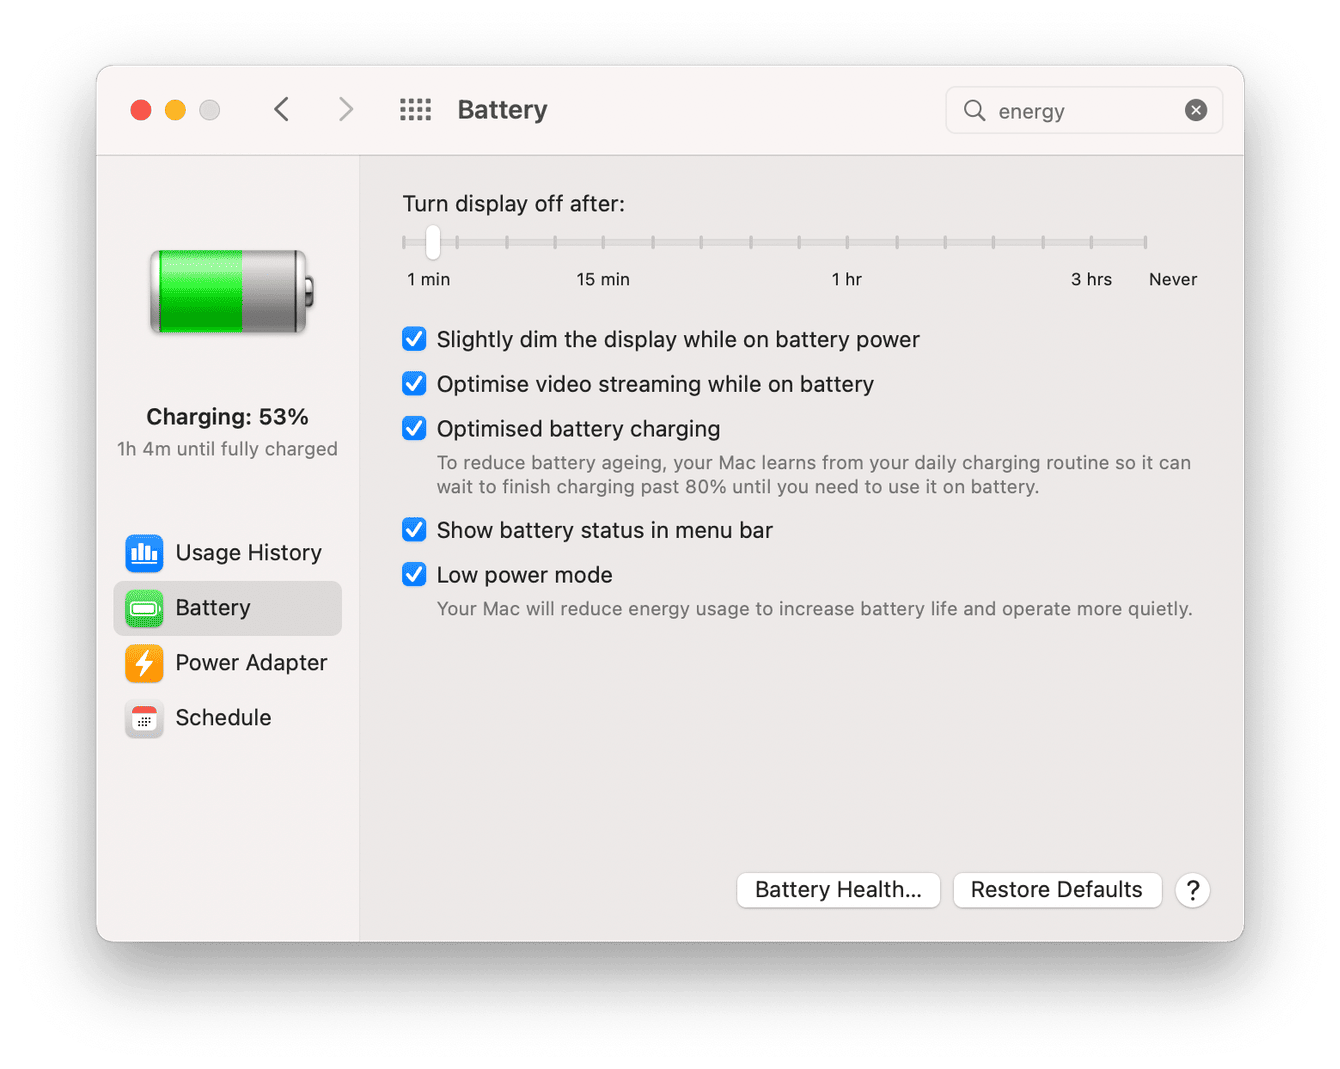 Mac battery settings